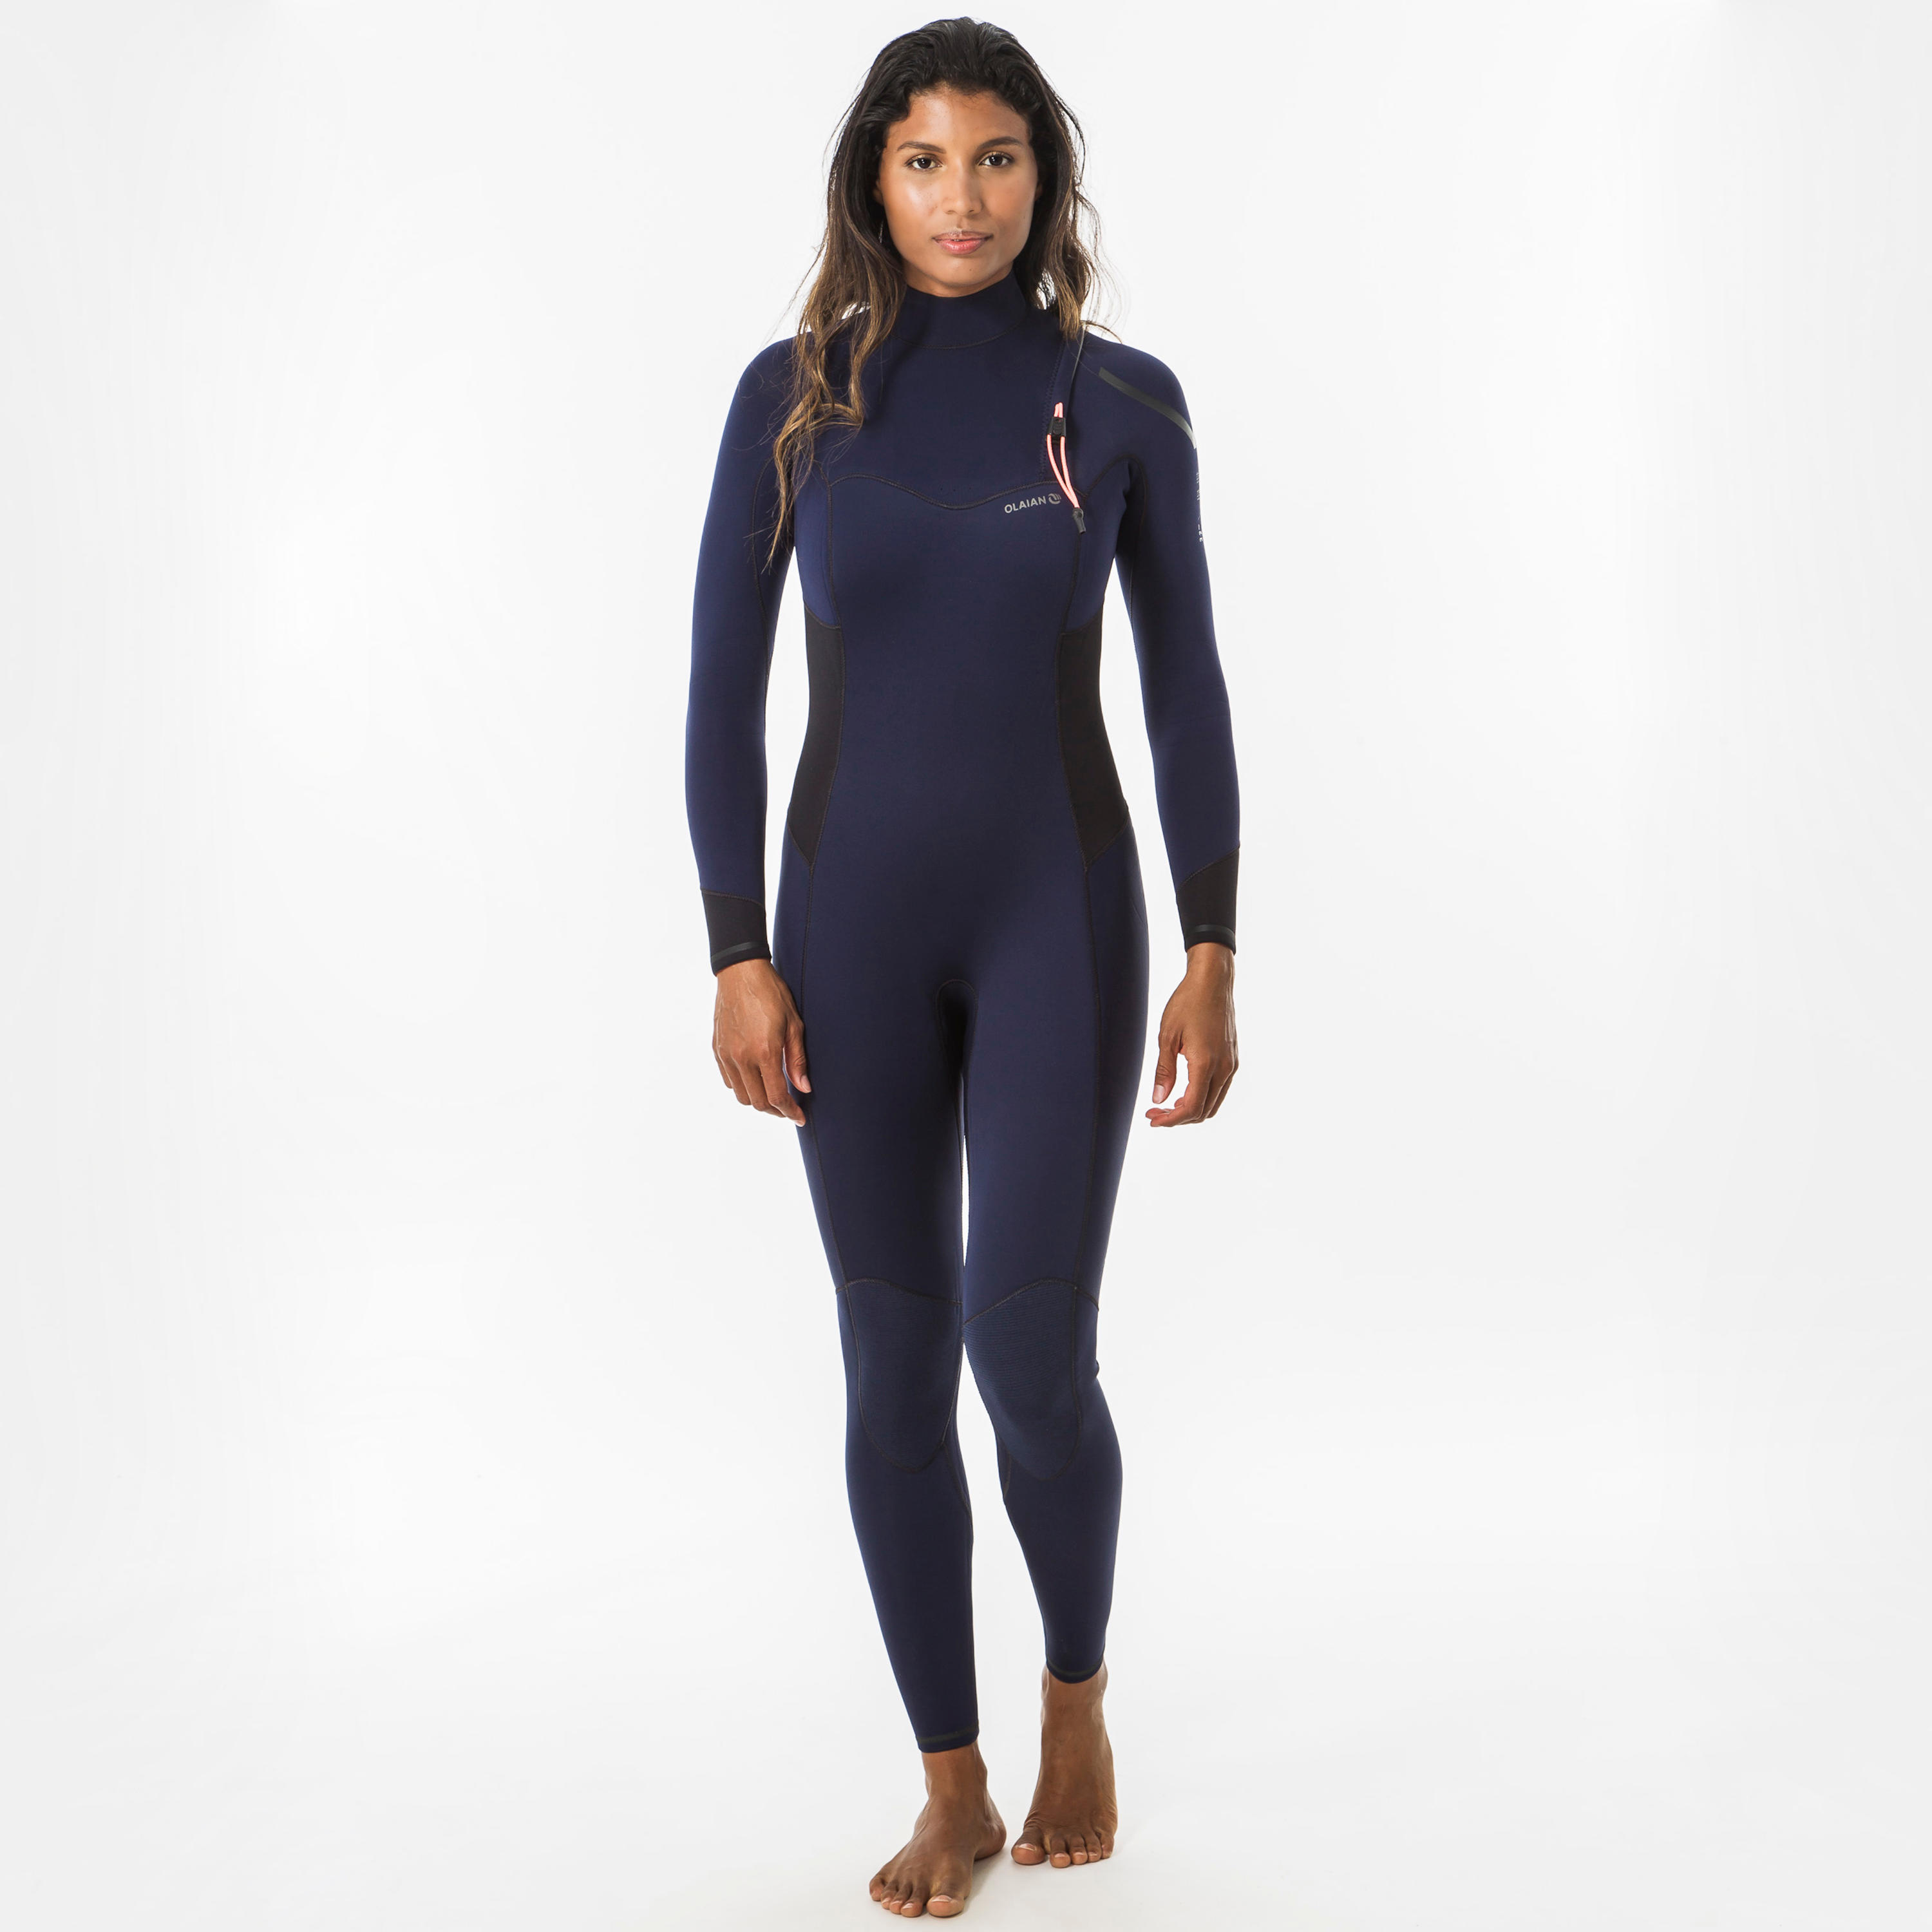 decathlon surf suit